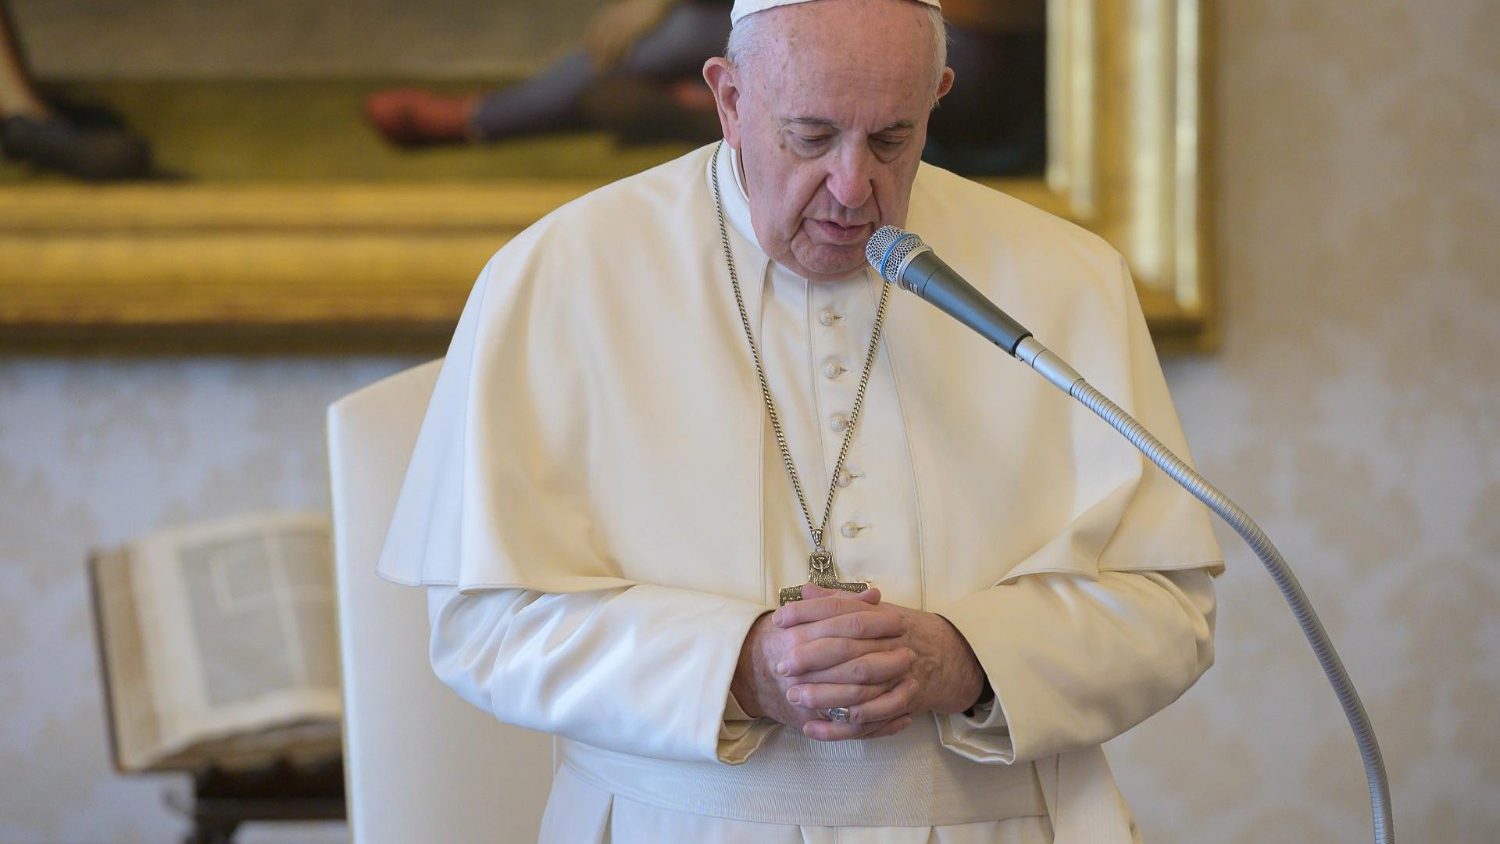 في مقابلته العامة مع المؤمنين البابا فرنسيس يتحدث عن رذيلة الكبرياء